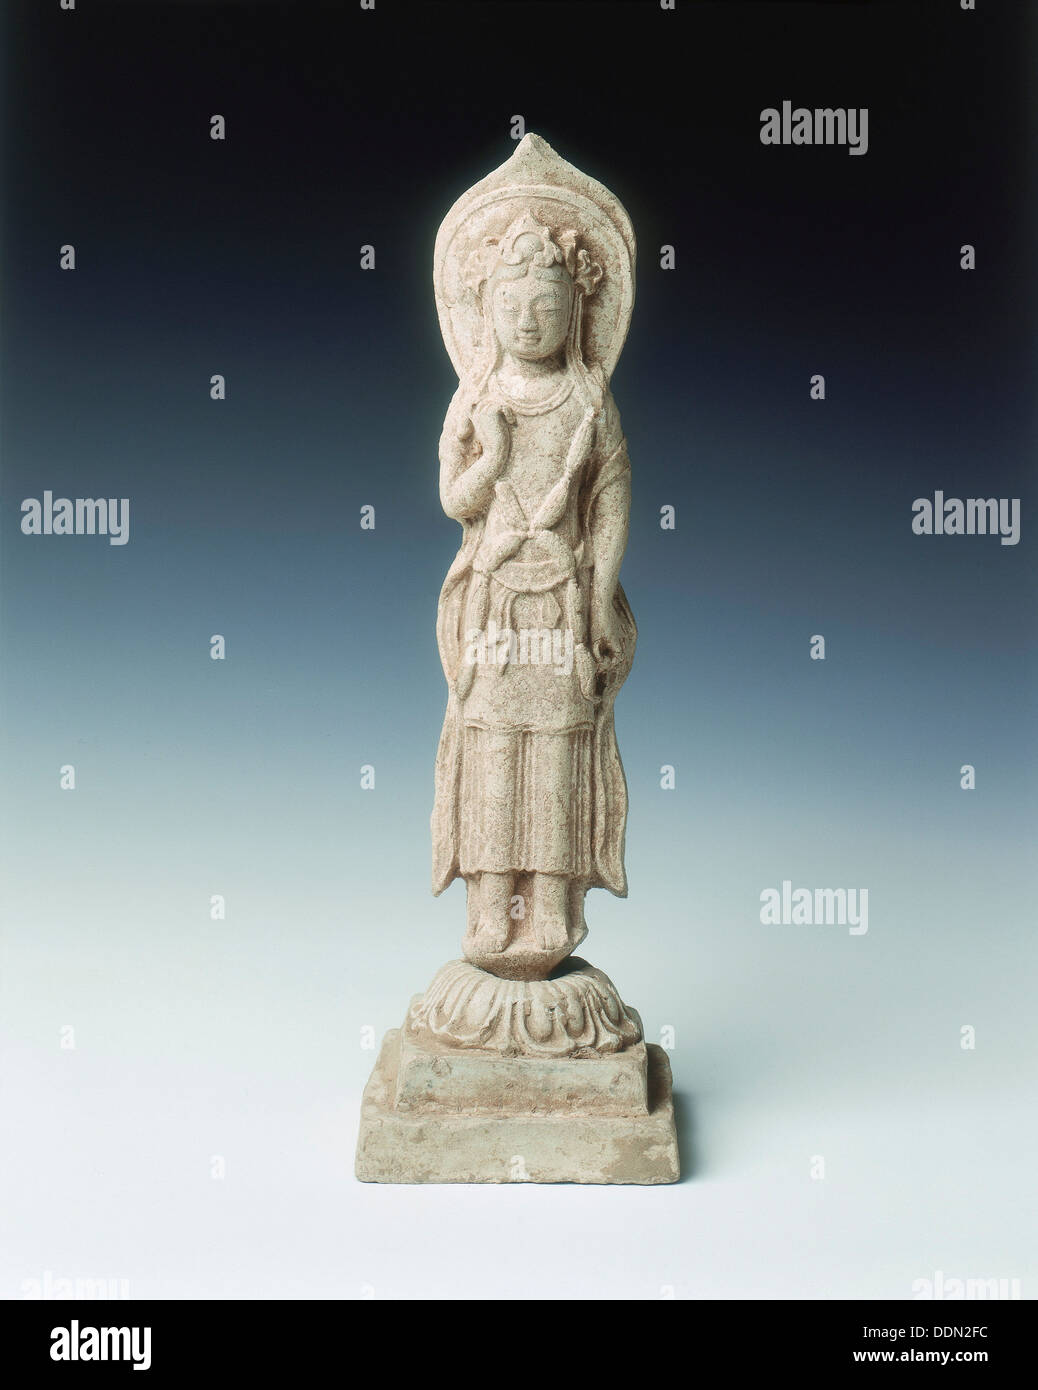 La figure de la poterie d'Avalokitesvara, le nord de la Chine, de la dynastie Qi, 563. Banque D'Images